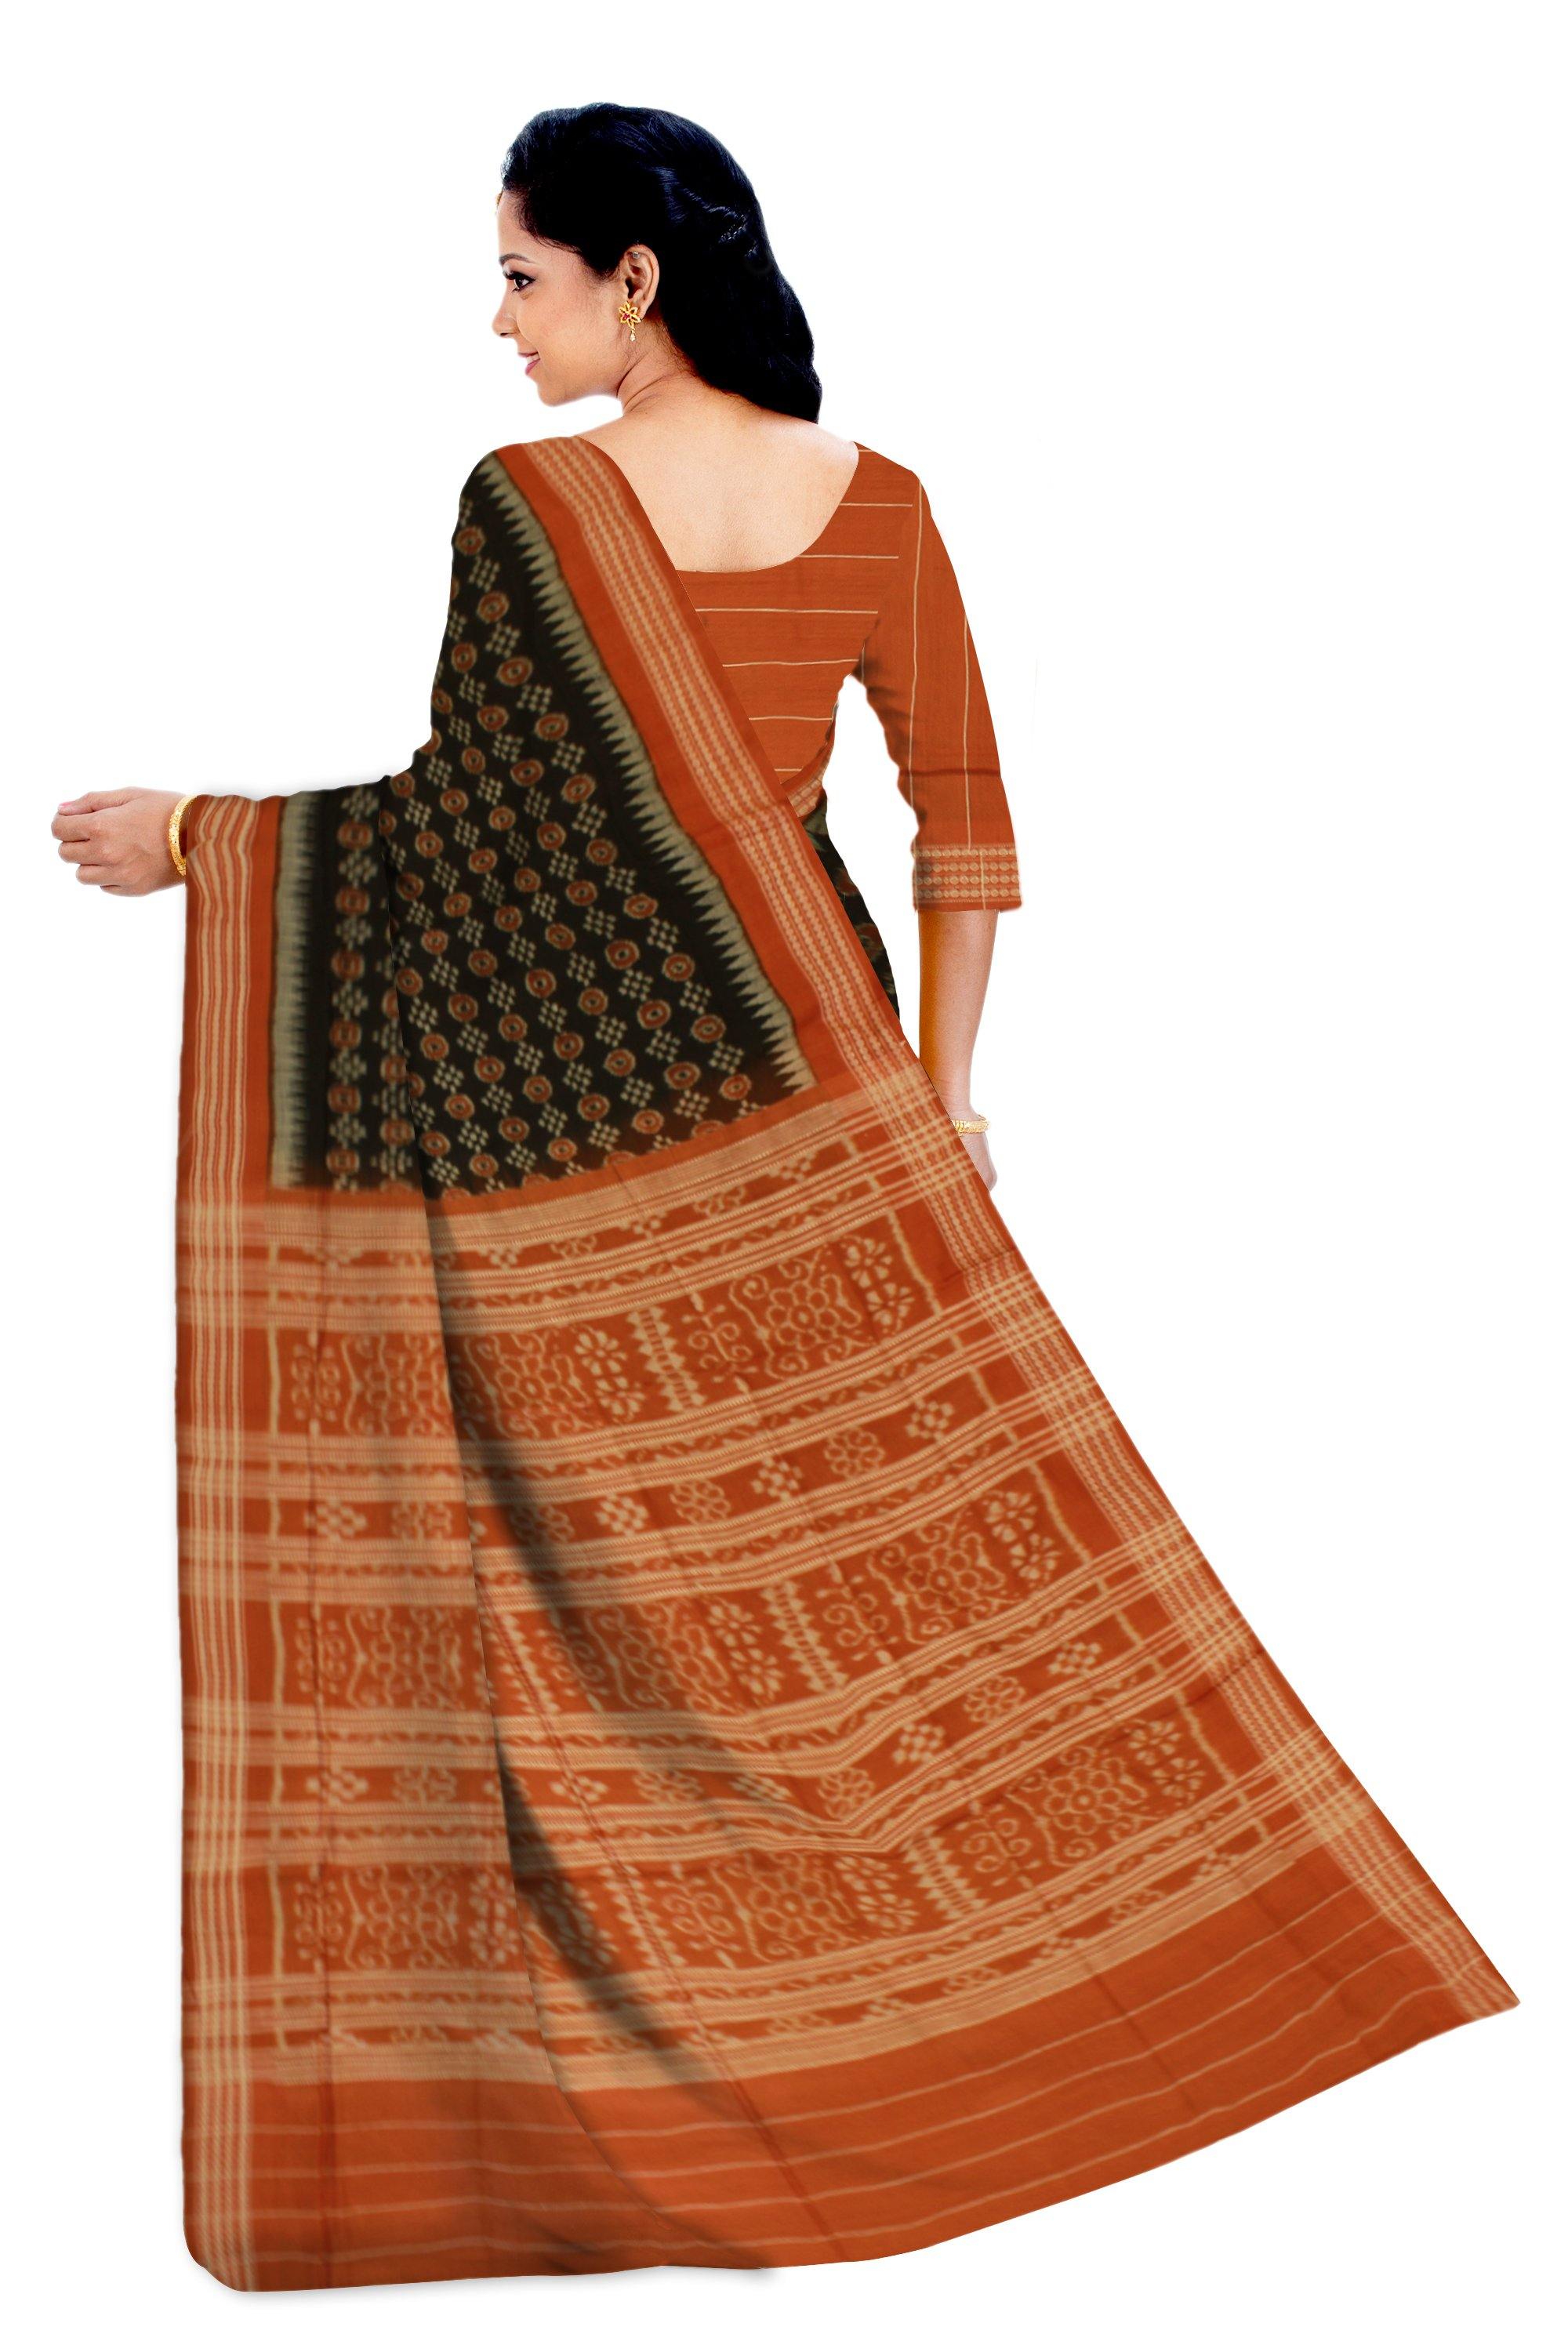 Sambalpuri IKAT Sare with Sapta and Flower print with out blouse piece - Koshali Arts & Crafts Enterprise